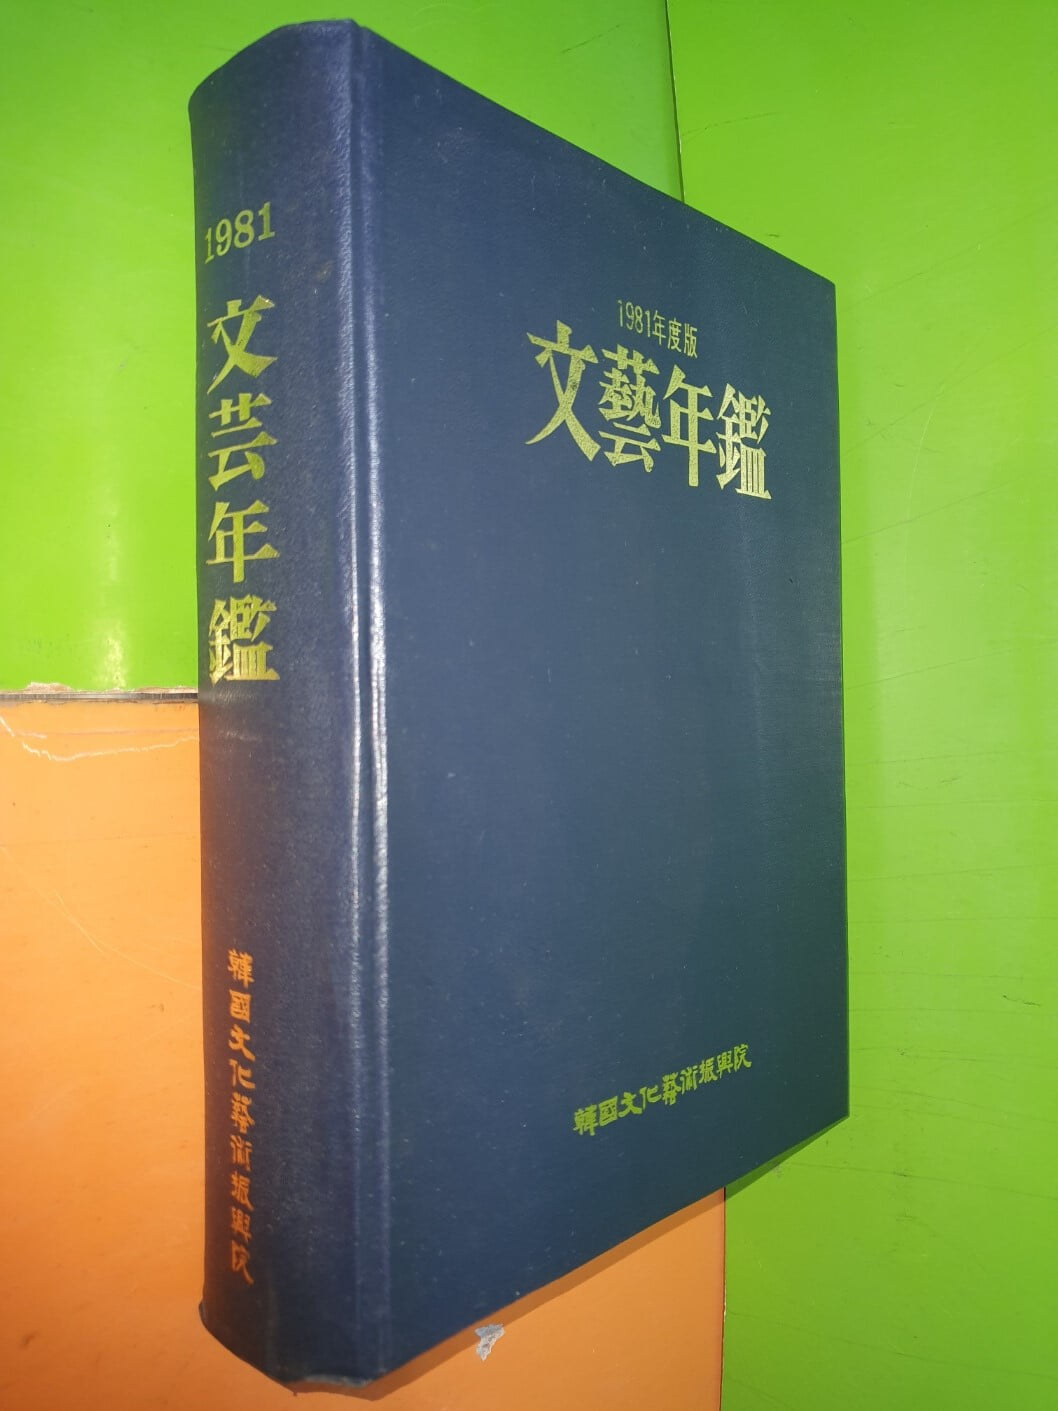 文藝年鑑 문예연감 1981년판 (통권7호)